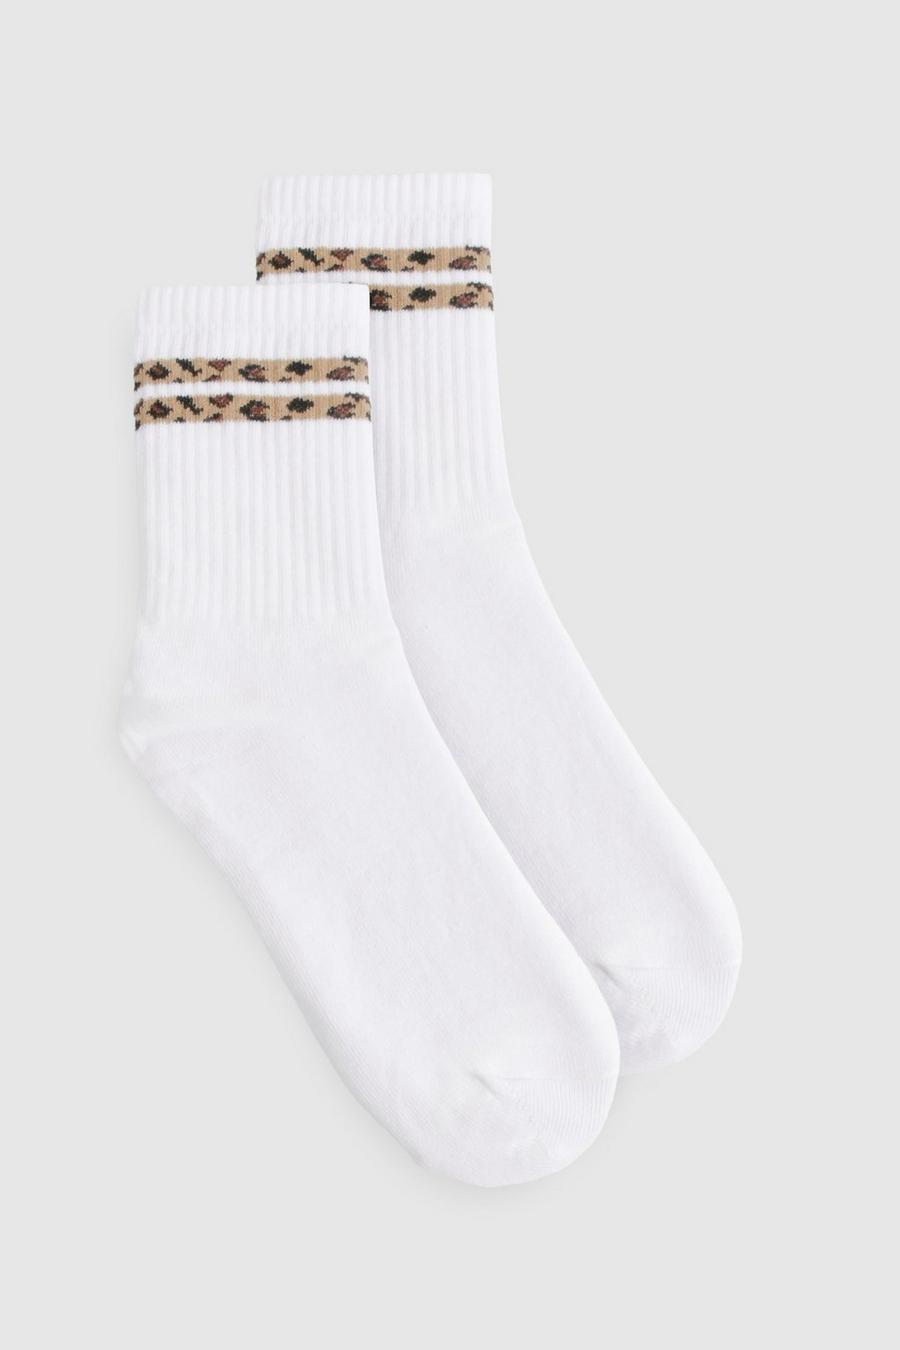 Calcetines deportivos con rayas dobles y estampado de leopardo, Leopard